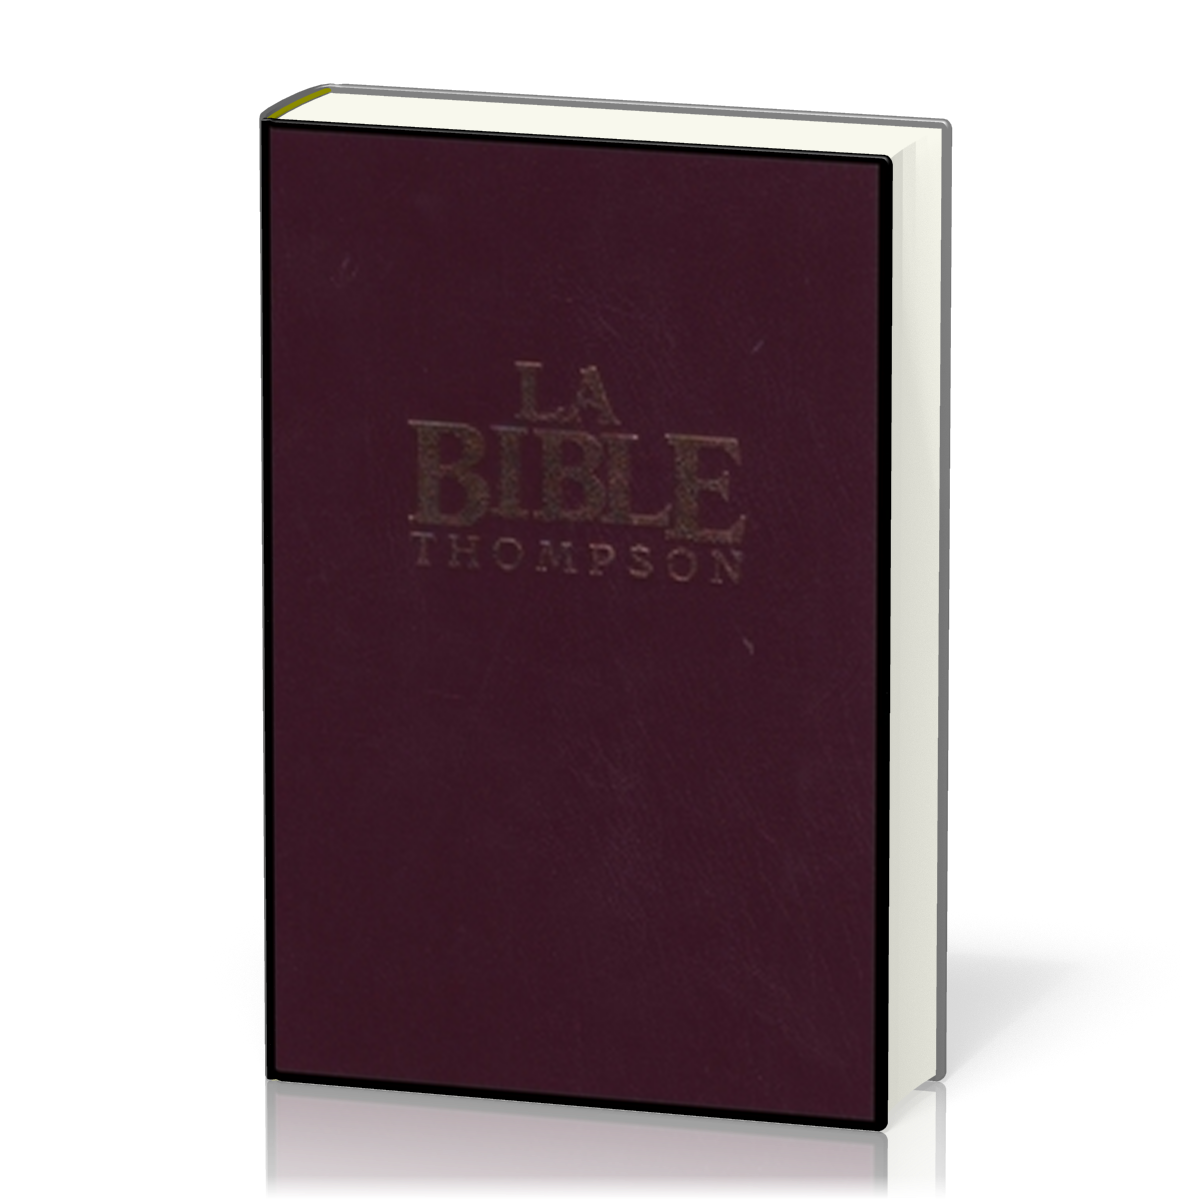 FRANZÖSISCHE BIBEL COLOMBE THOMPSON, GEBUNDEN, DUNKELROT